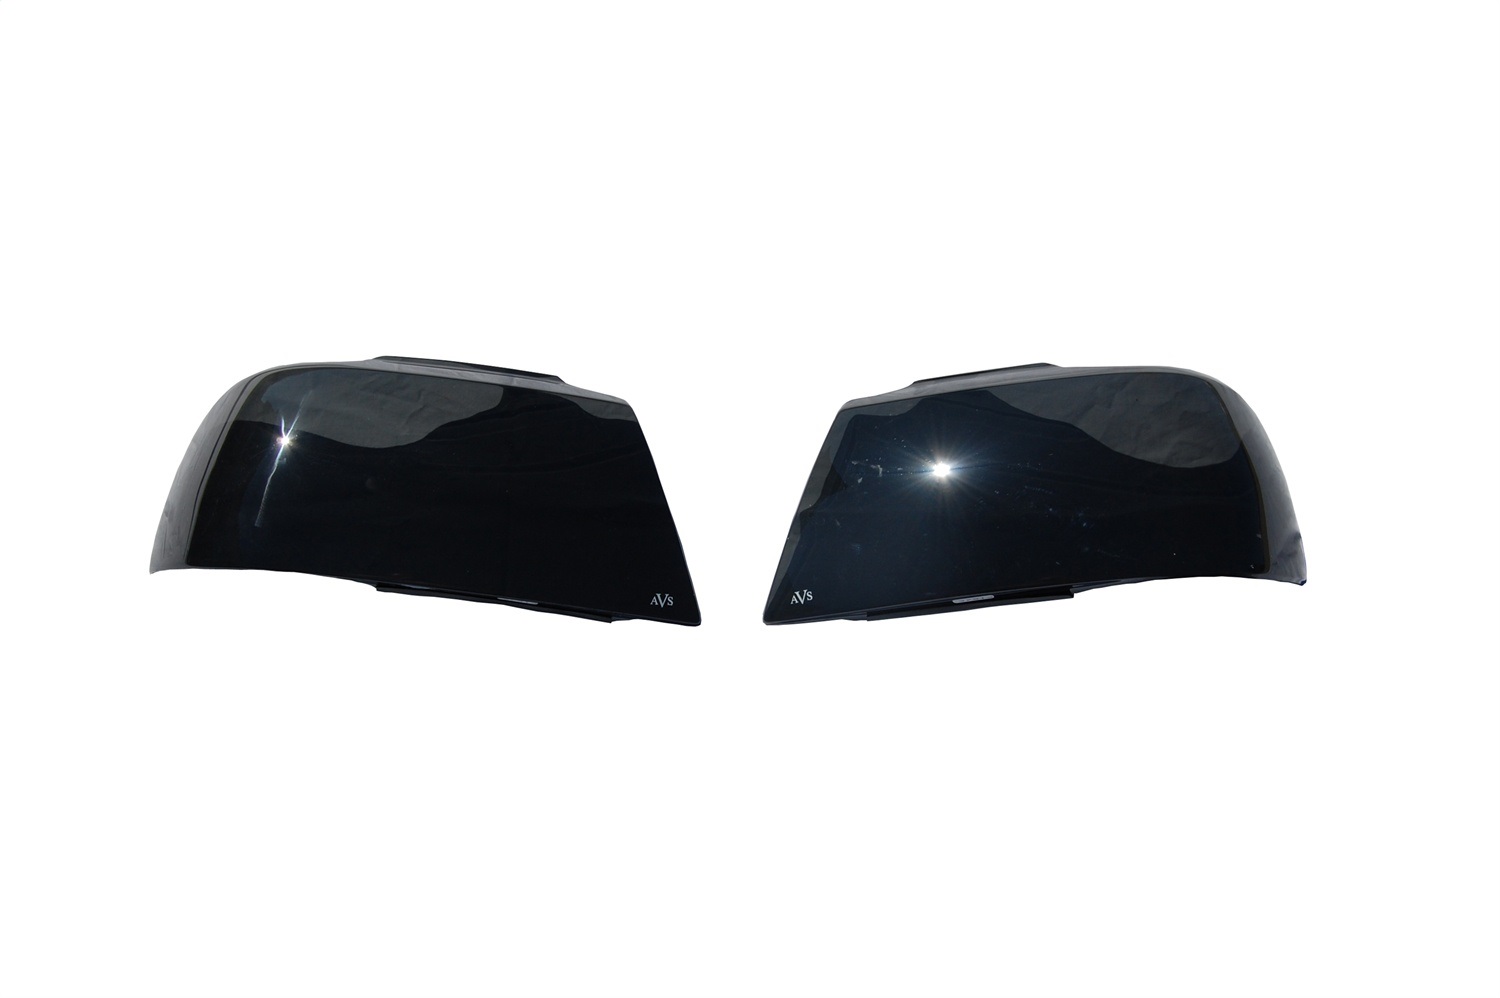 Auto Ventshade Auto Ventshade 37950 Headlight Covers Fits 04-15 Armada Pathfinder Titan